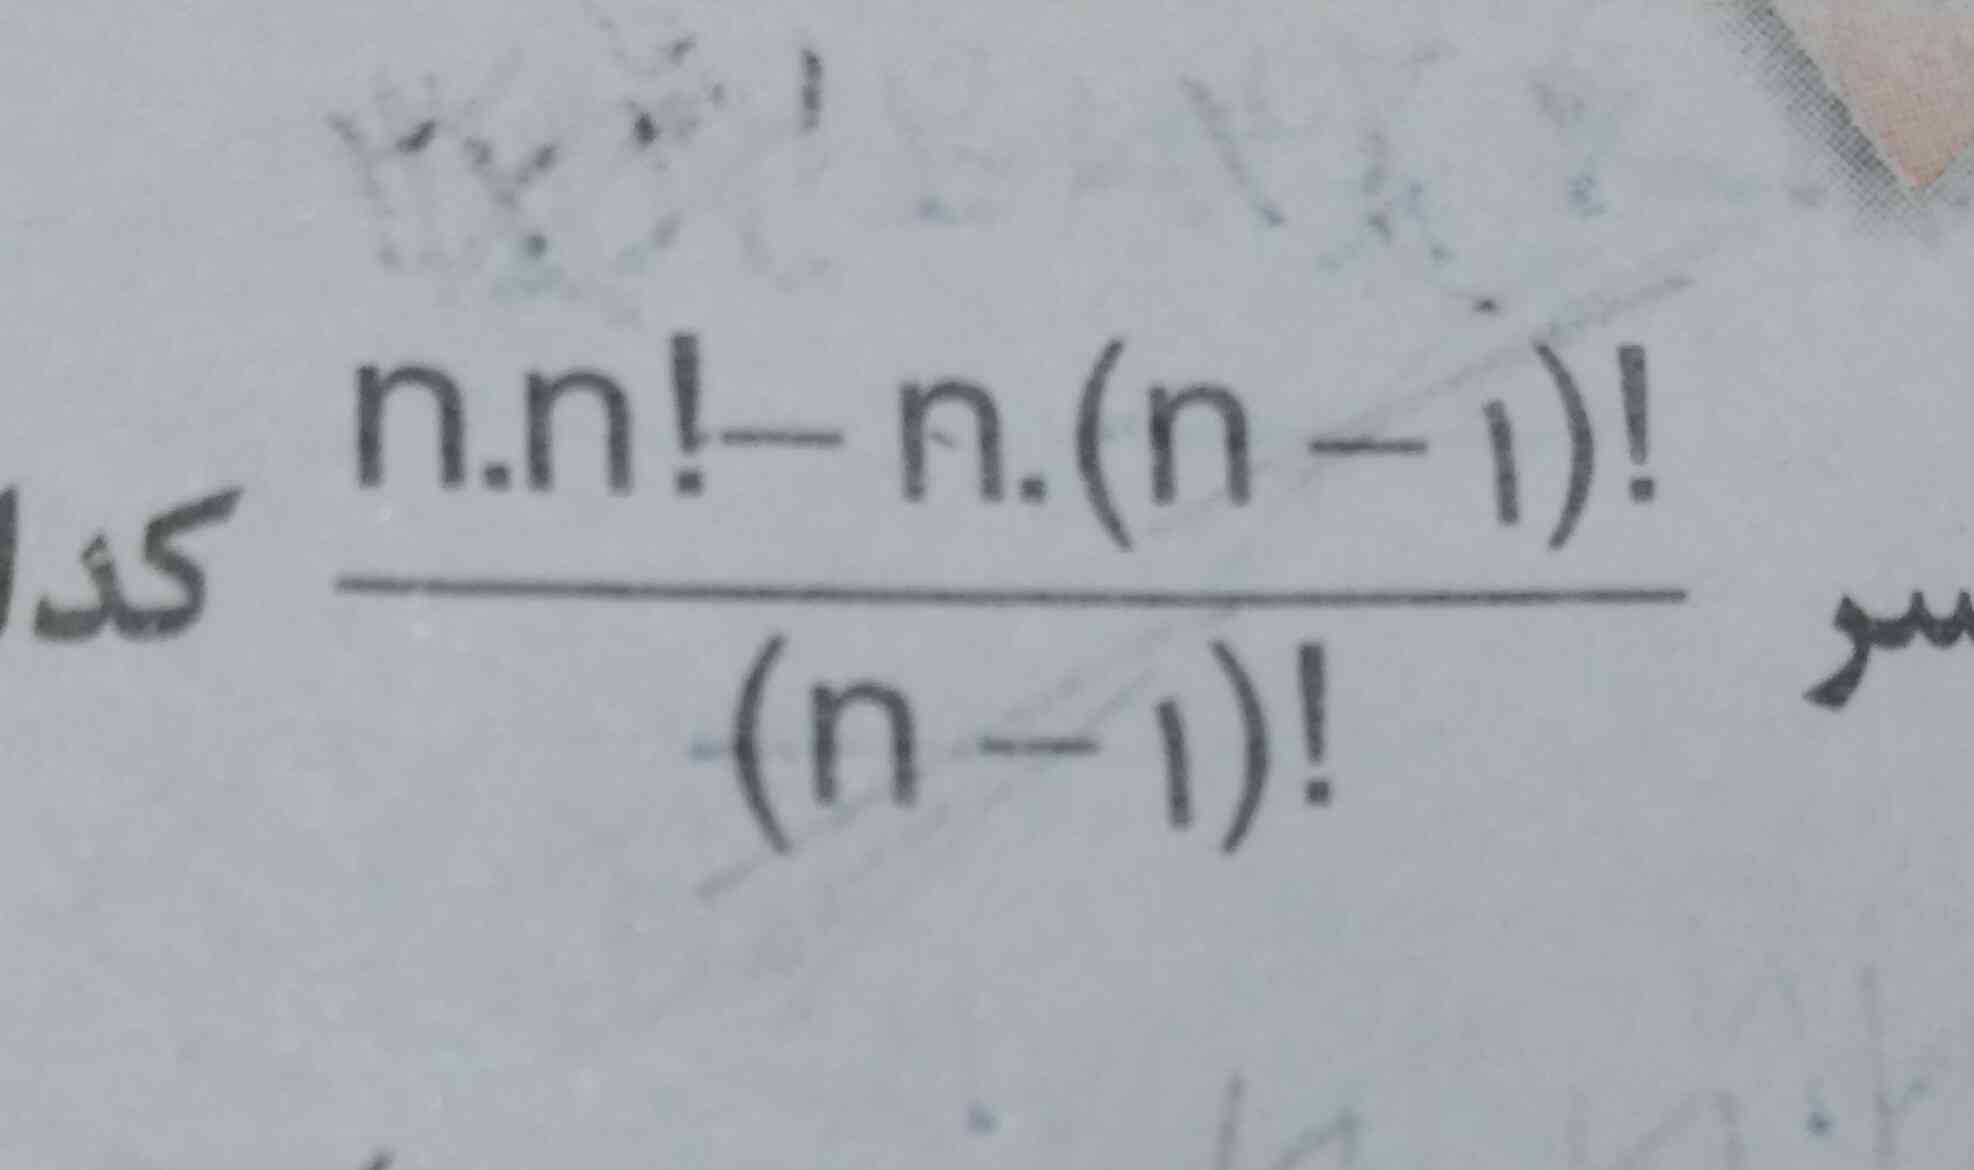 لطفا اگر کسی  جواب اینو میدونه بگه شده گزینه n²- n خیلی ضروریه 